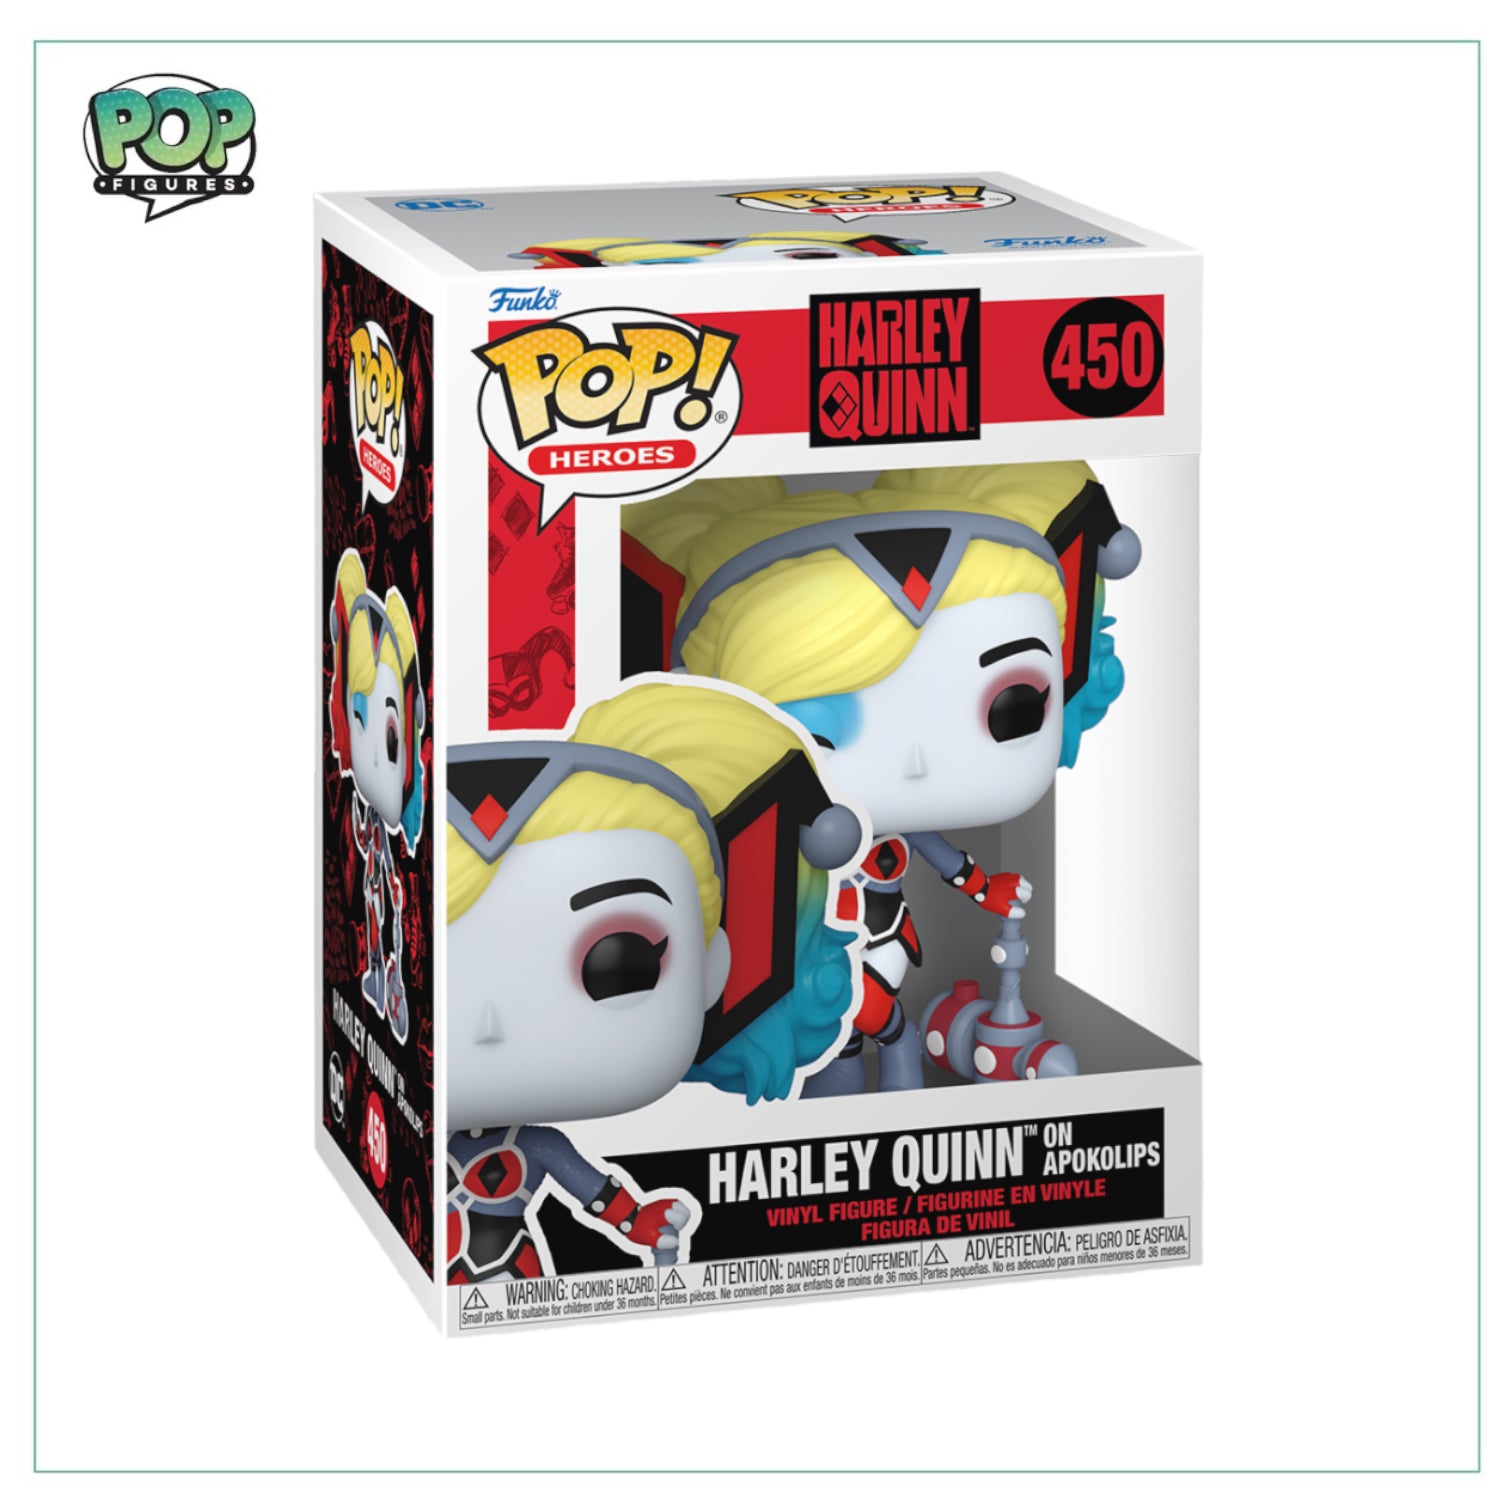 Harley Quinn on Apokolips #450 Funko Pop! Harley Quinn